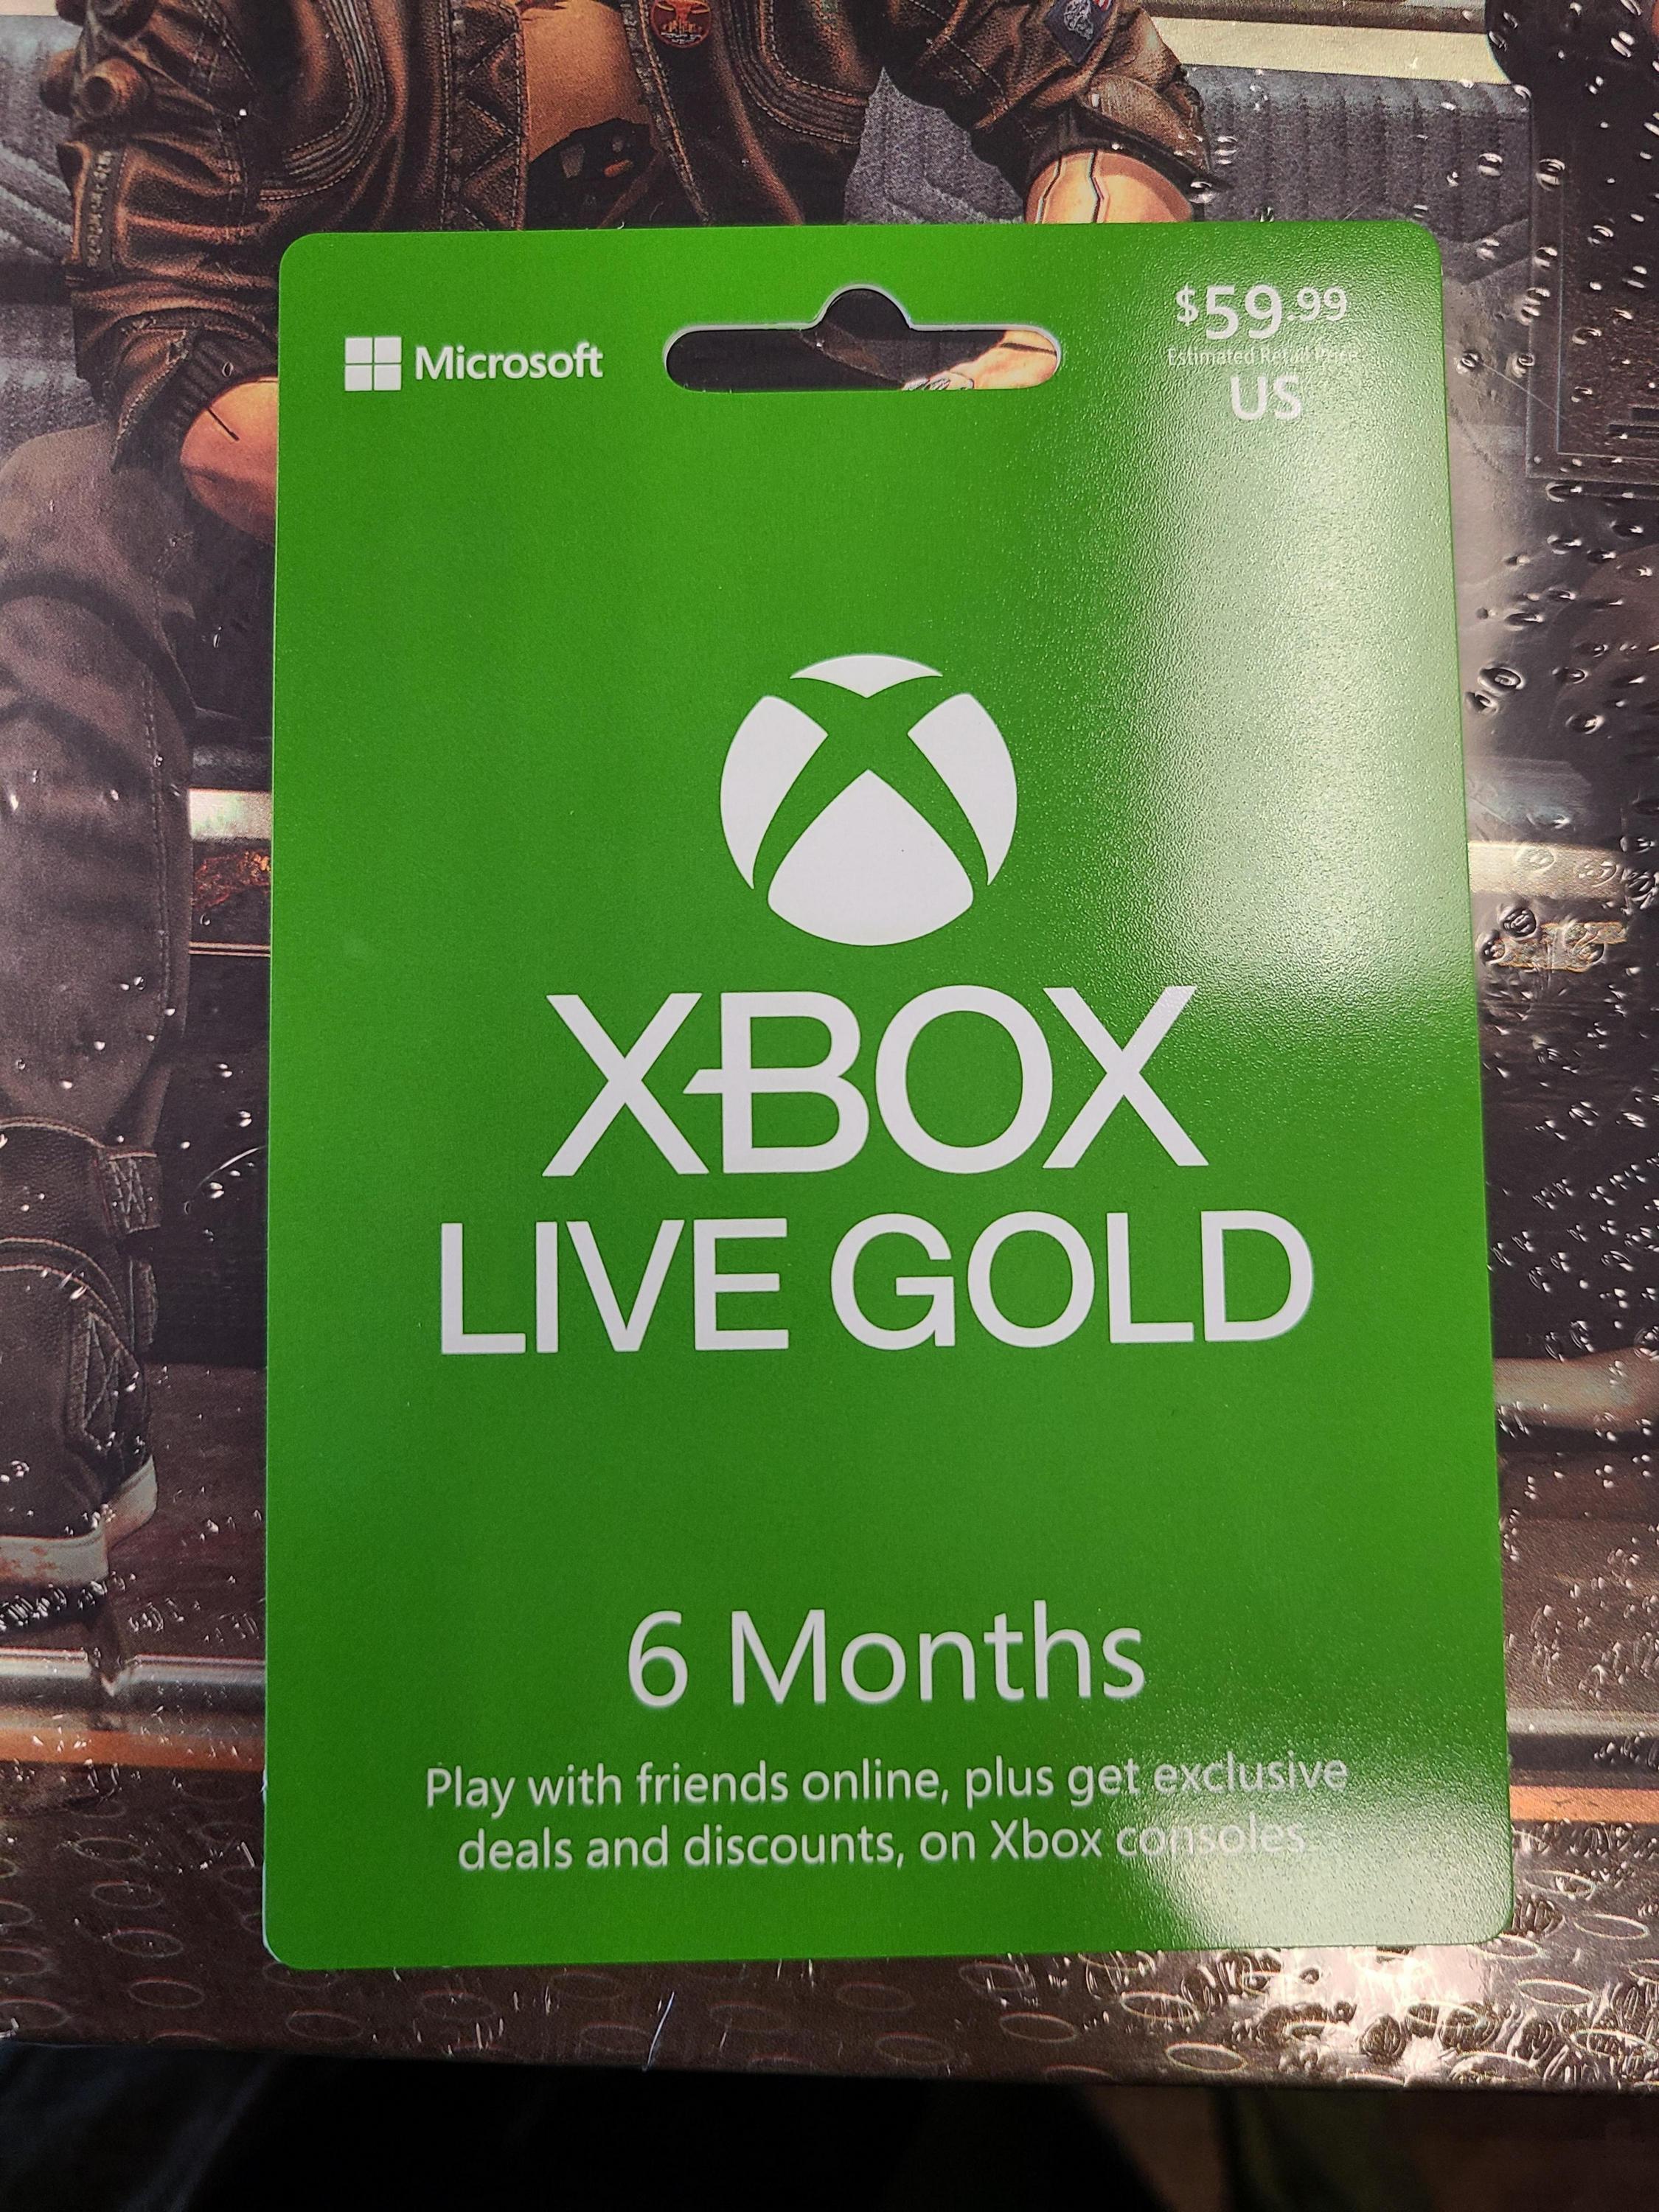 消息称微软或将提高Xbox Live金会员价格 涨幅巨大